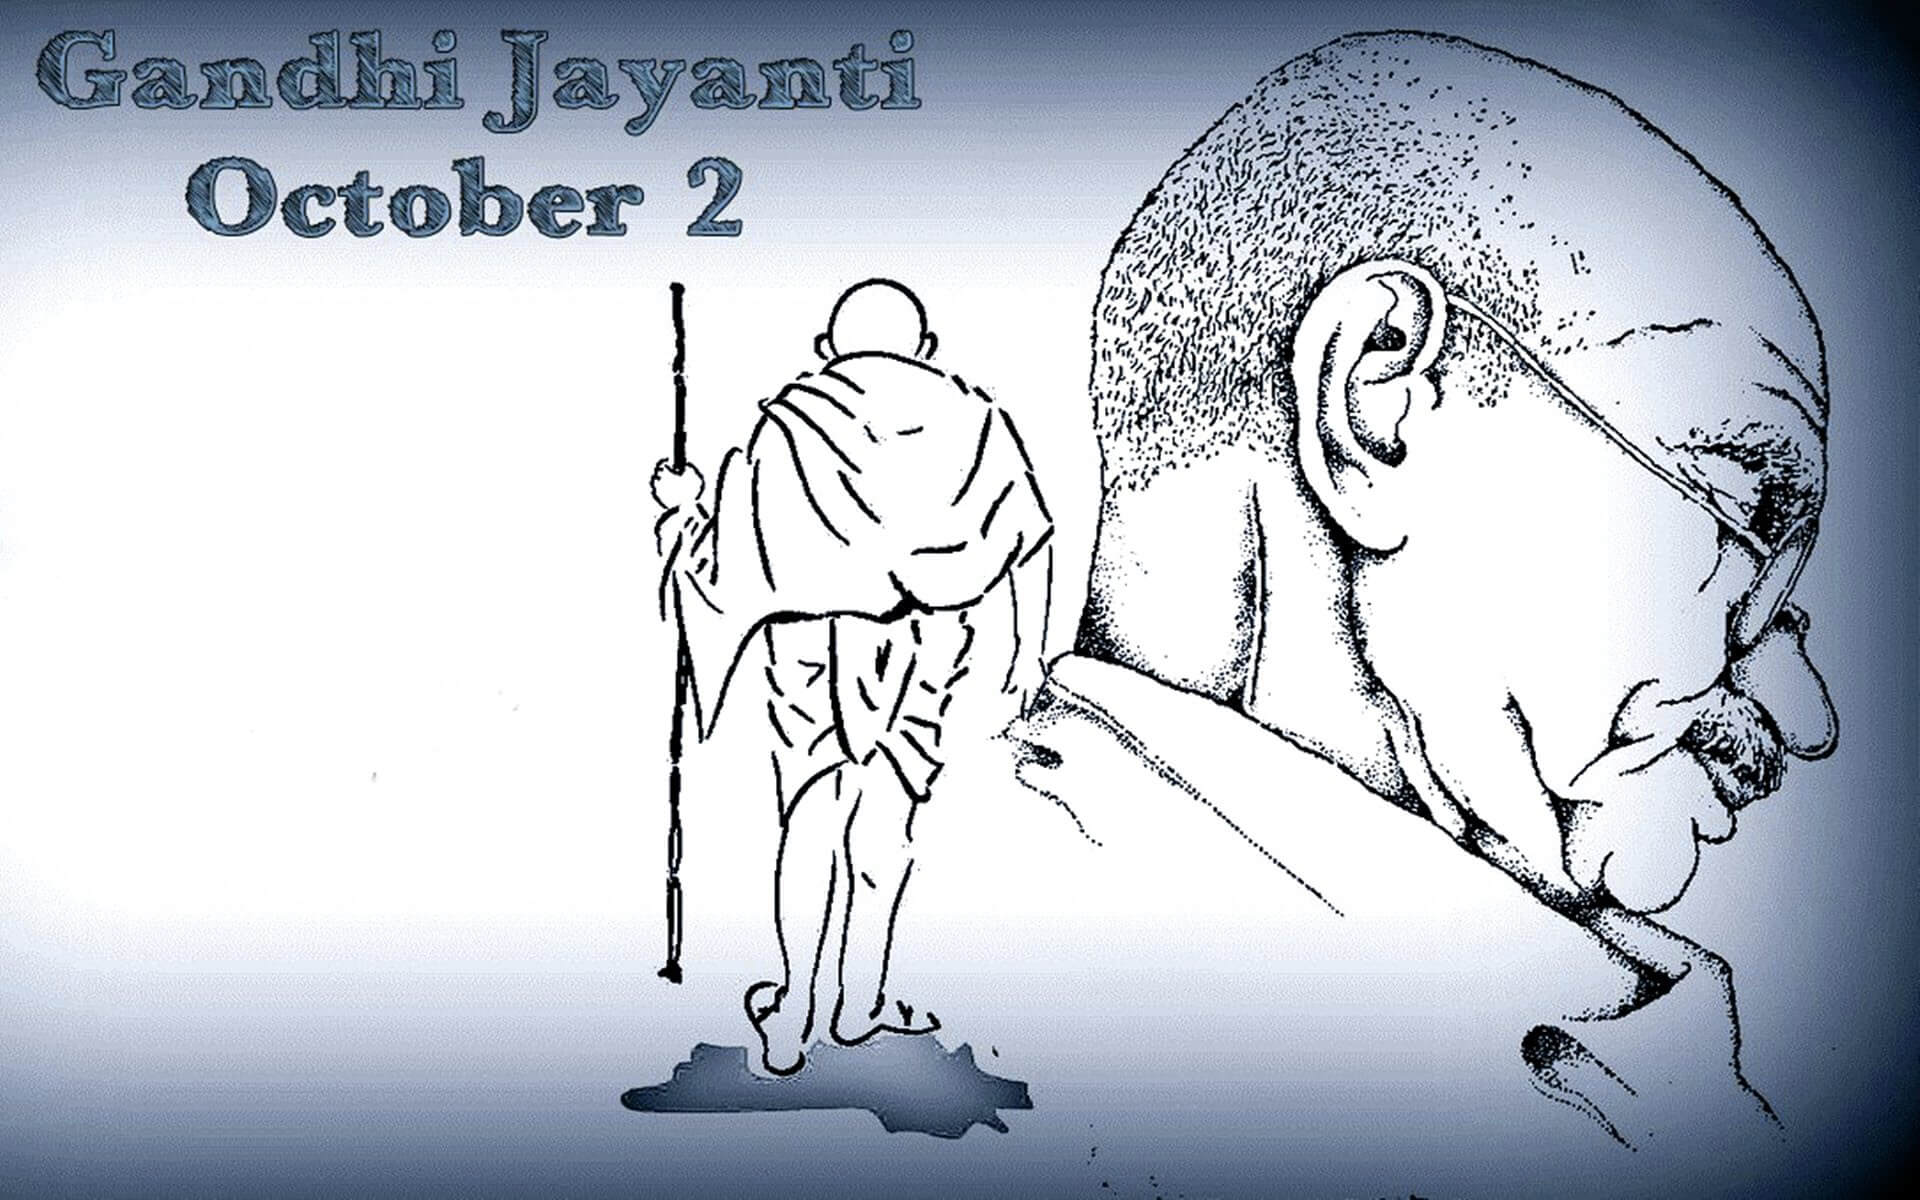 Mahatma Gandhi Jayanti October 2 Latest Hd Wallpaper - 2 October Mahatma Gandhi , HD Wallpaper & Backgrounds